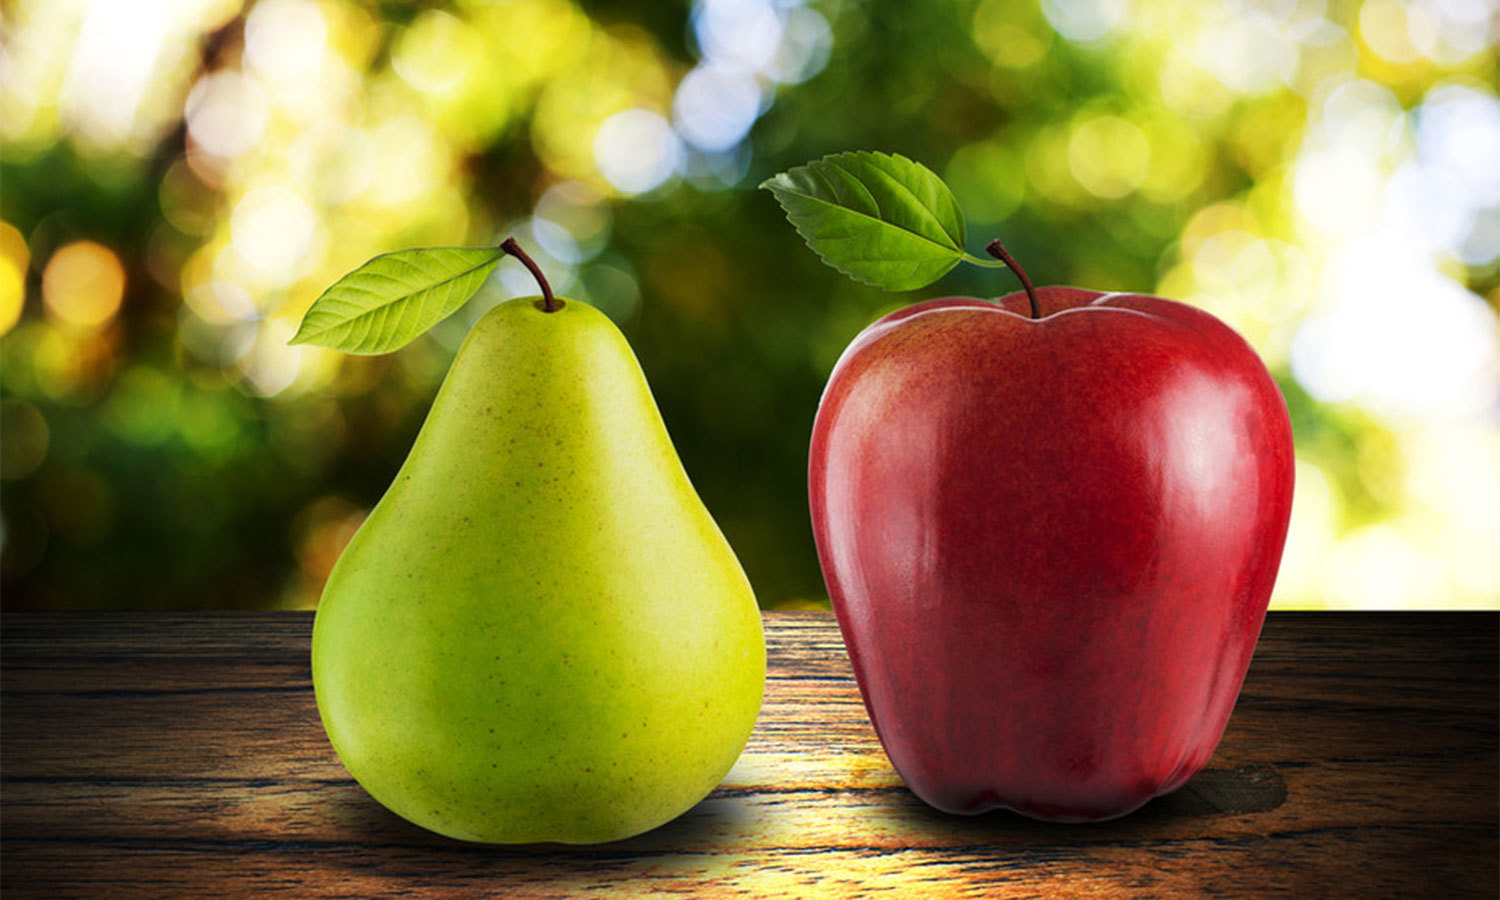 Nuo kriaušių iki obuolių: įvairių veislių ir jų skonio savybių tyrimas